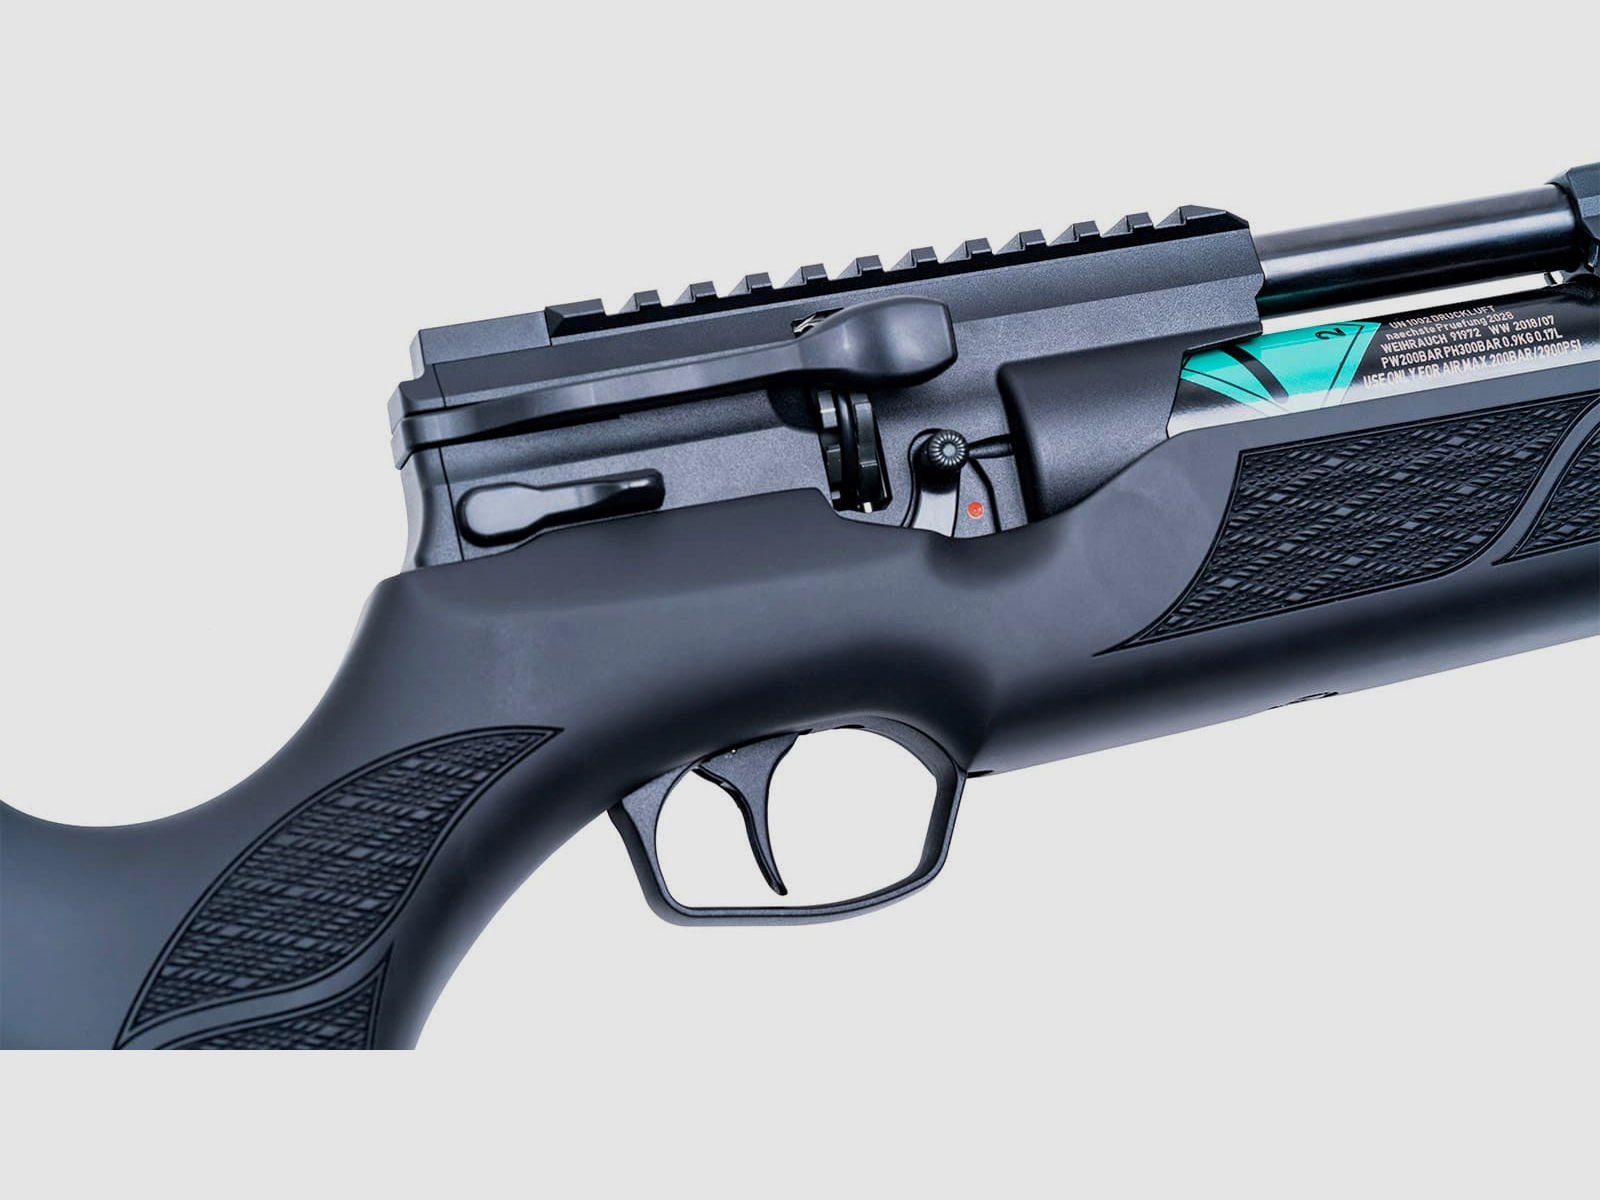 WEIHRAUCH Matchwaffen Gewehr HW 110 ST-K Kal. 4,5mm